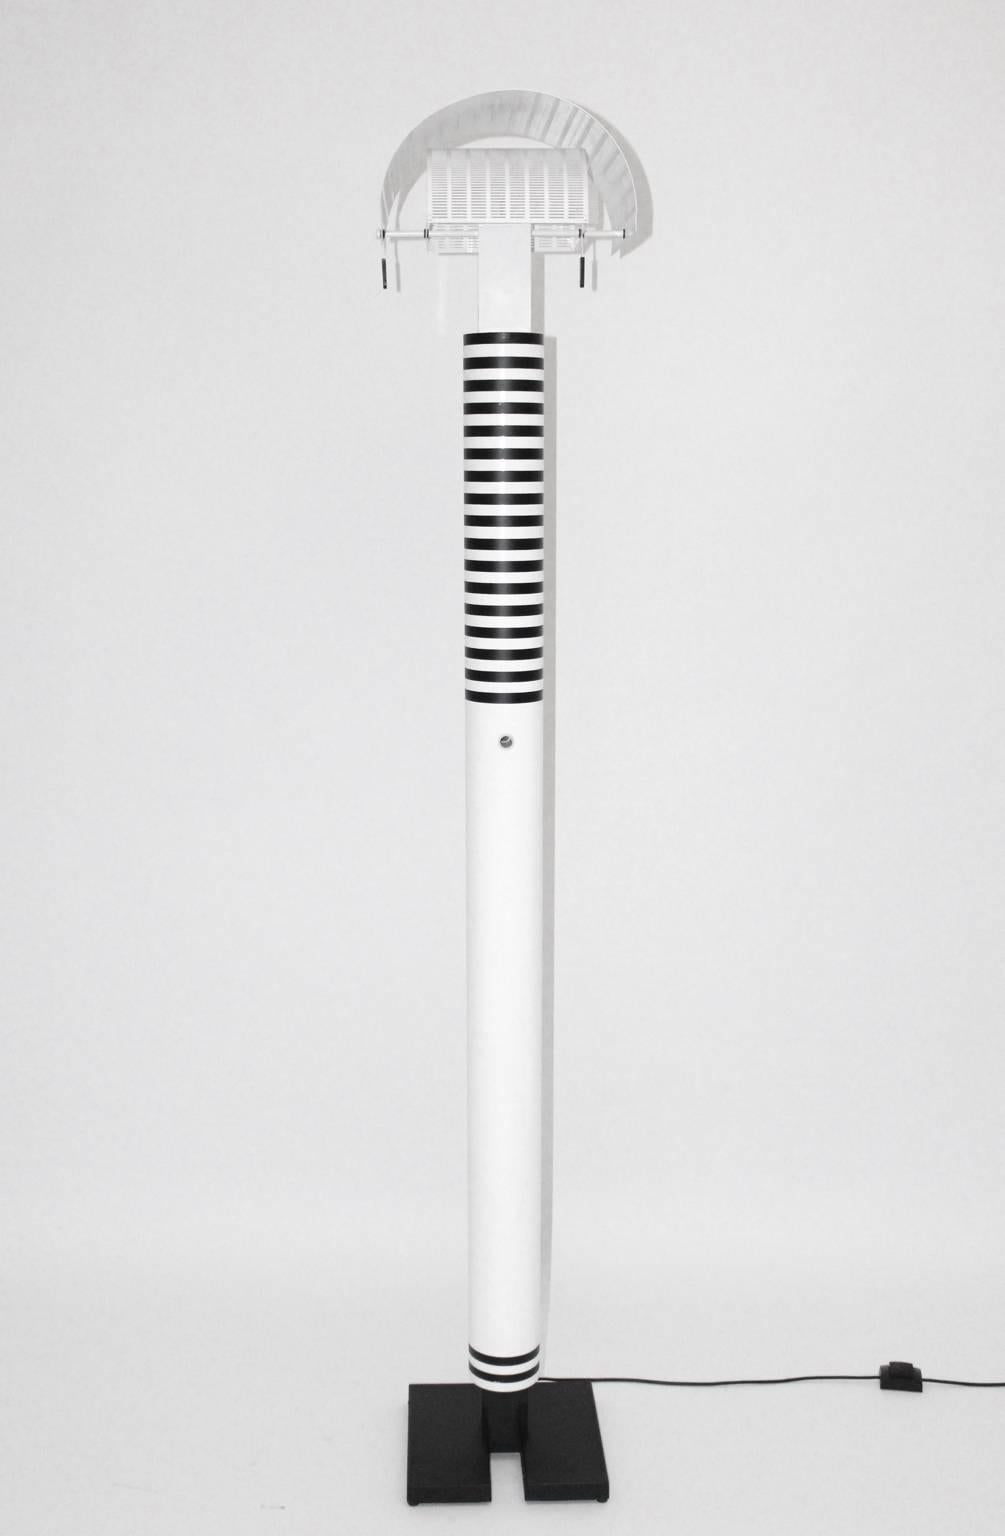 Moderne schwarz-weiße Vintage-Stehleuchte aus lackiertem Metall, entworfen von Mario Botta und ausgeführt von Artemide Italien (beschriftet).
Die Stehleuchte besteht aus weiß und schwarz emailliertem Stahlrohr und emailliertem Aluminium.
Der Zustand